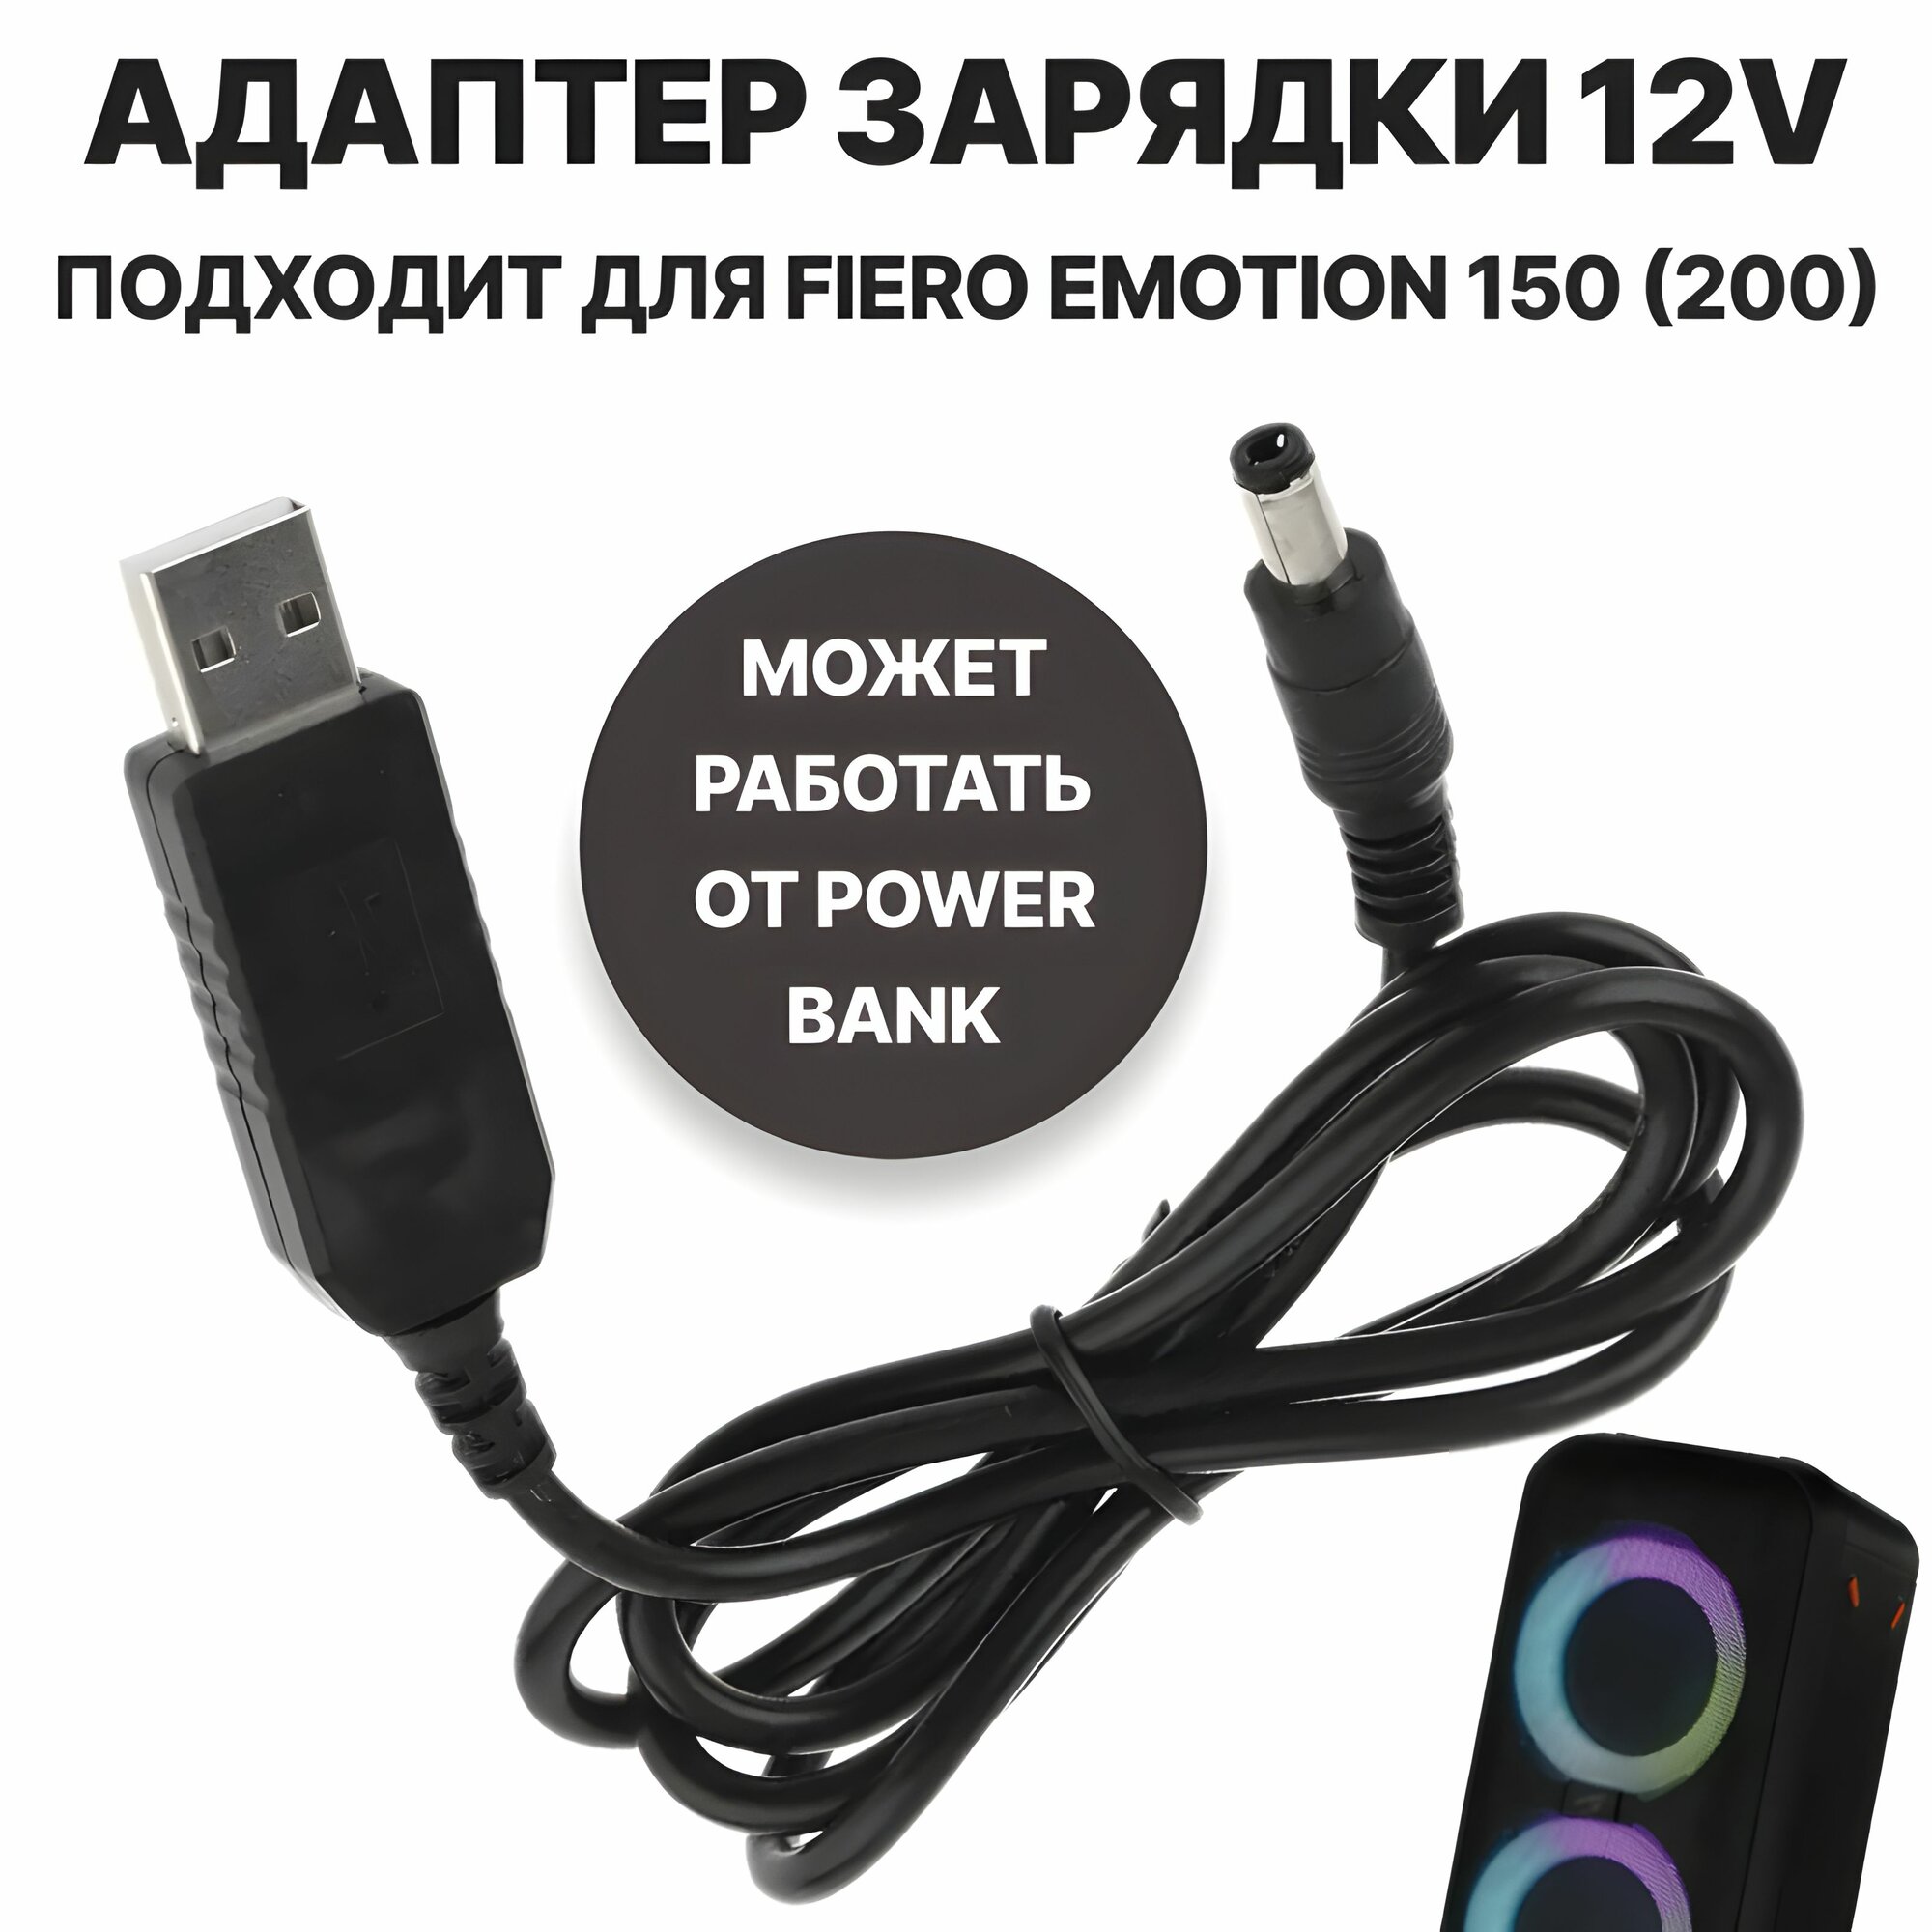 Кабель зарядки (питания) 12 вольт от пауэрбанка/зарядных устройств с поддержкой QC2.0/3.0 (адаптер USB - DC 5,5*2,1(2,5), 3А), подходит для Fiero Emotion